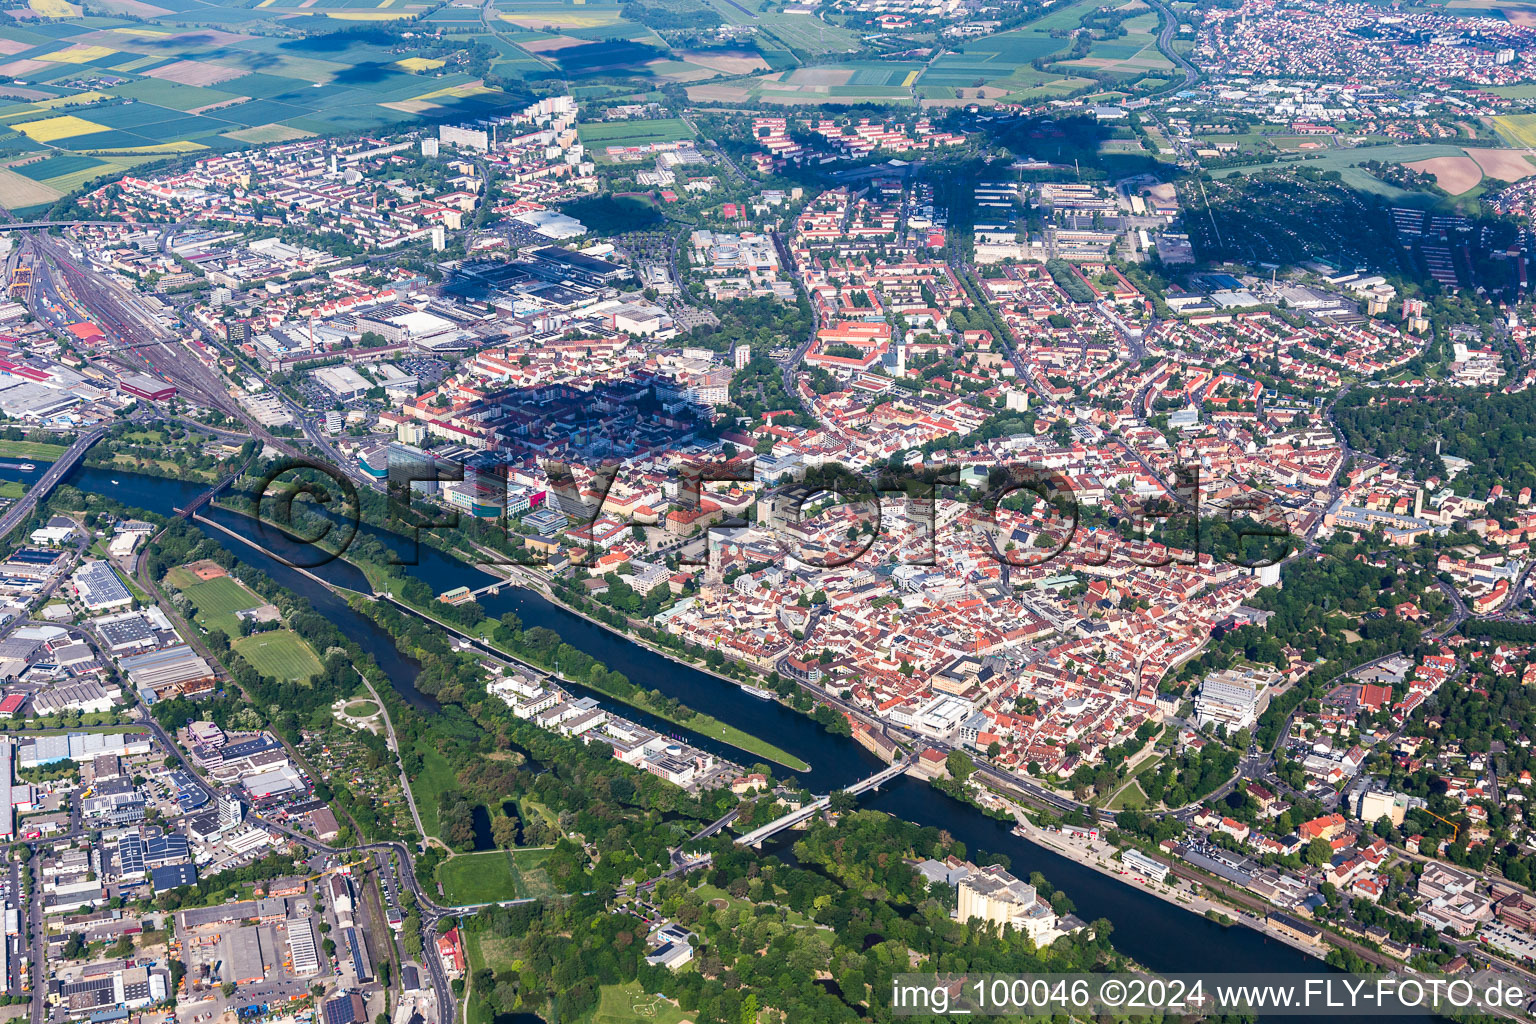 Luftbild von Stadtansicht am Ufer des Flußverlaufes des Main in Schweinfurt im Bundesland Bayern, Deutschland